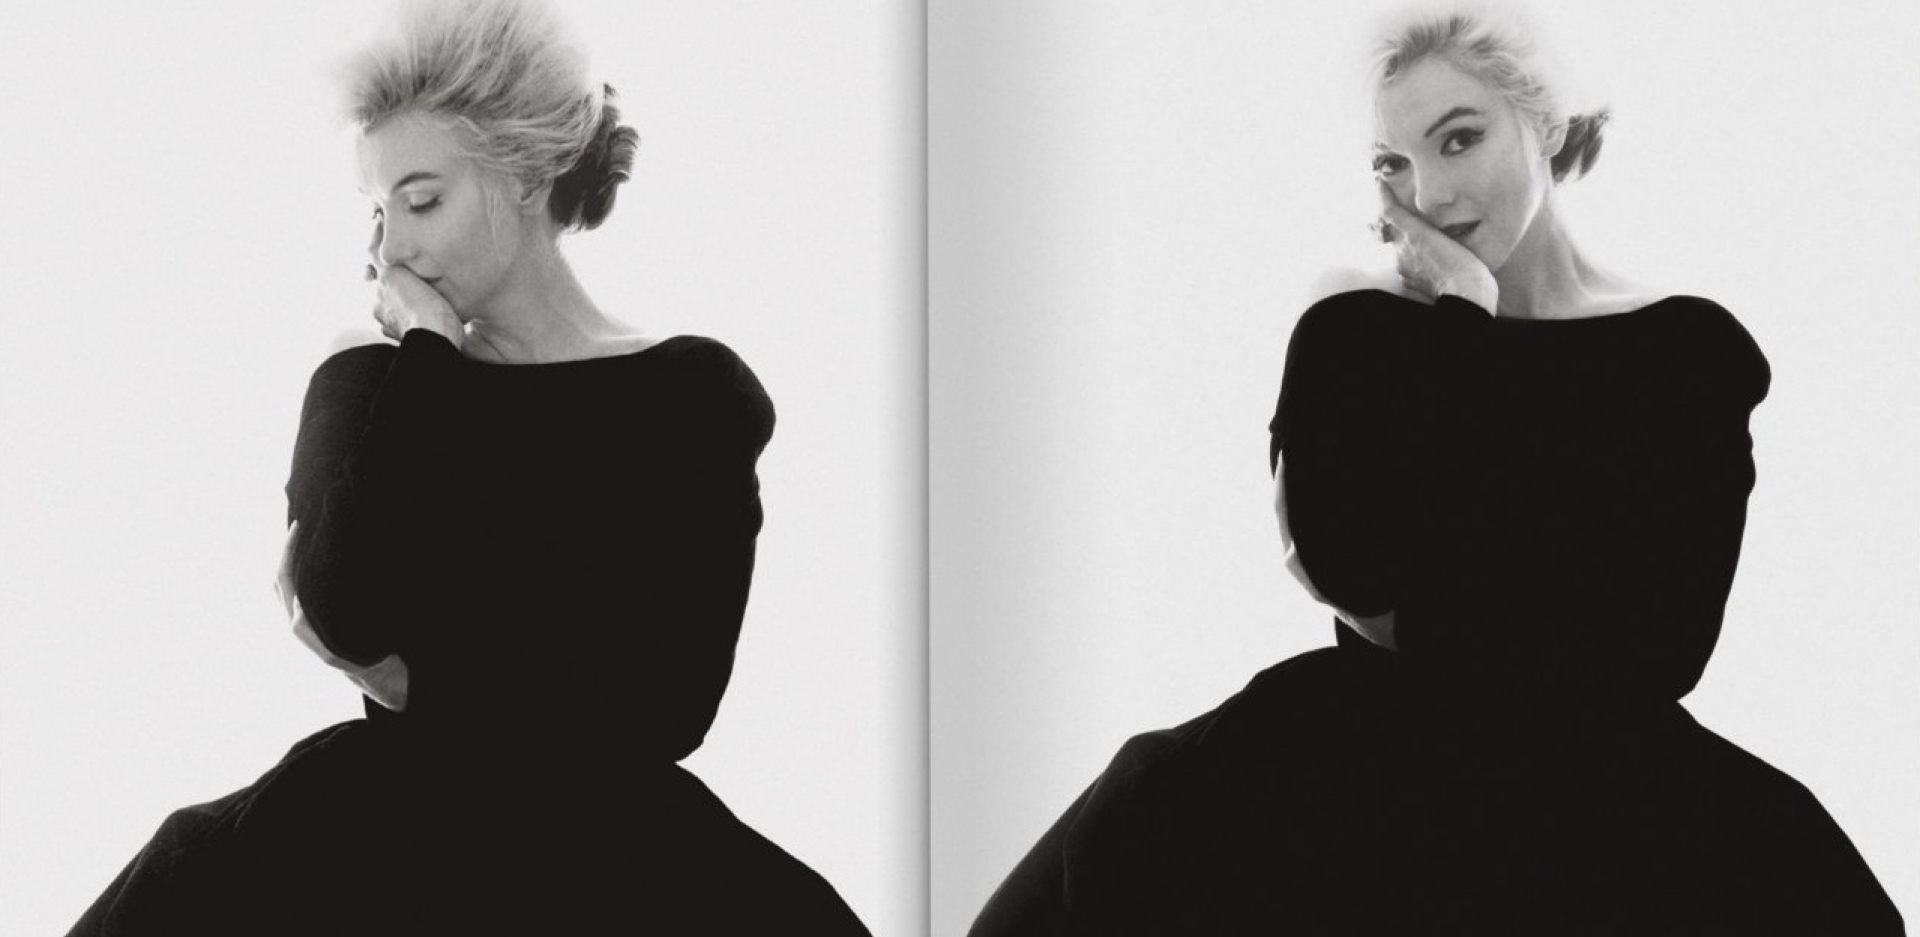 Το συλλεκτικό λεύκωμα της TASCHEN για τη Marilyn Monroe με τις σπάνιες φωτογραφίες του Bern Stern και τα κείμενα του βραβευμένου συγγραφέα και δημοσιογράφου Norman Mailer.